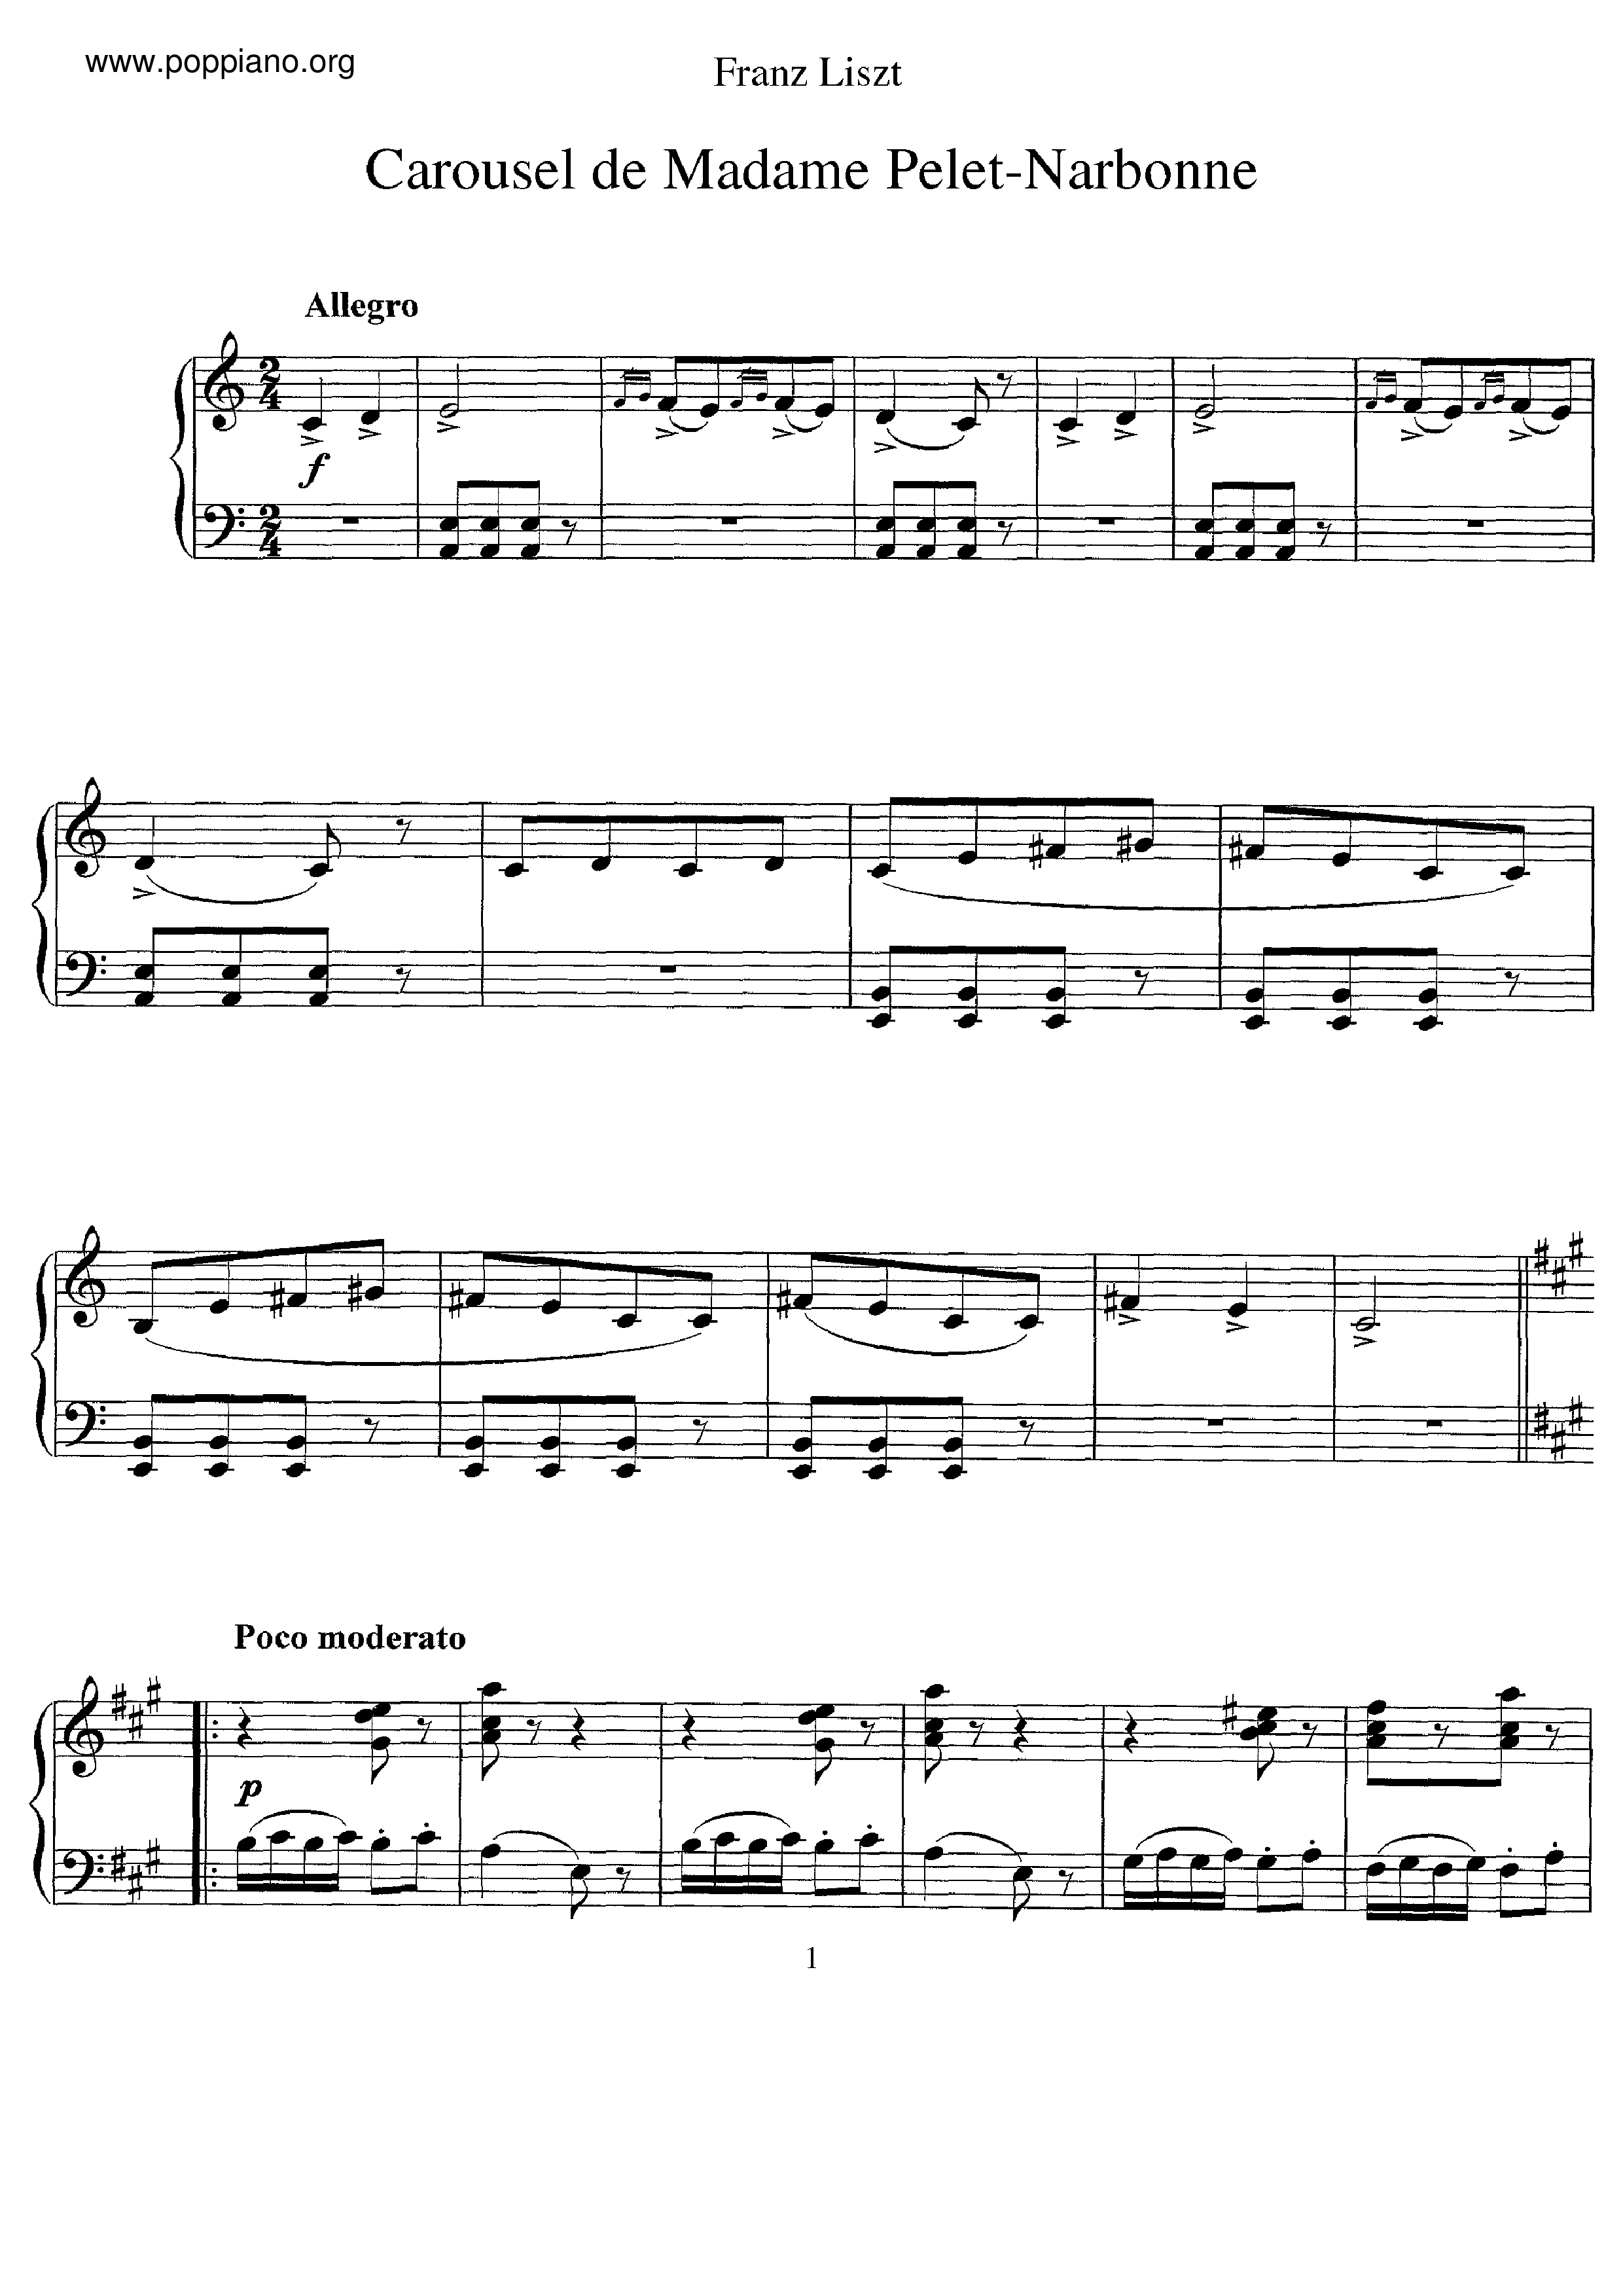 Carousel de Madame Pelet-Narbone, S.214a琴谱